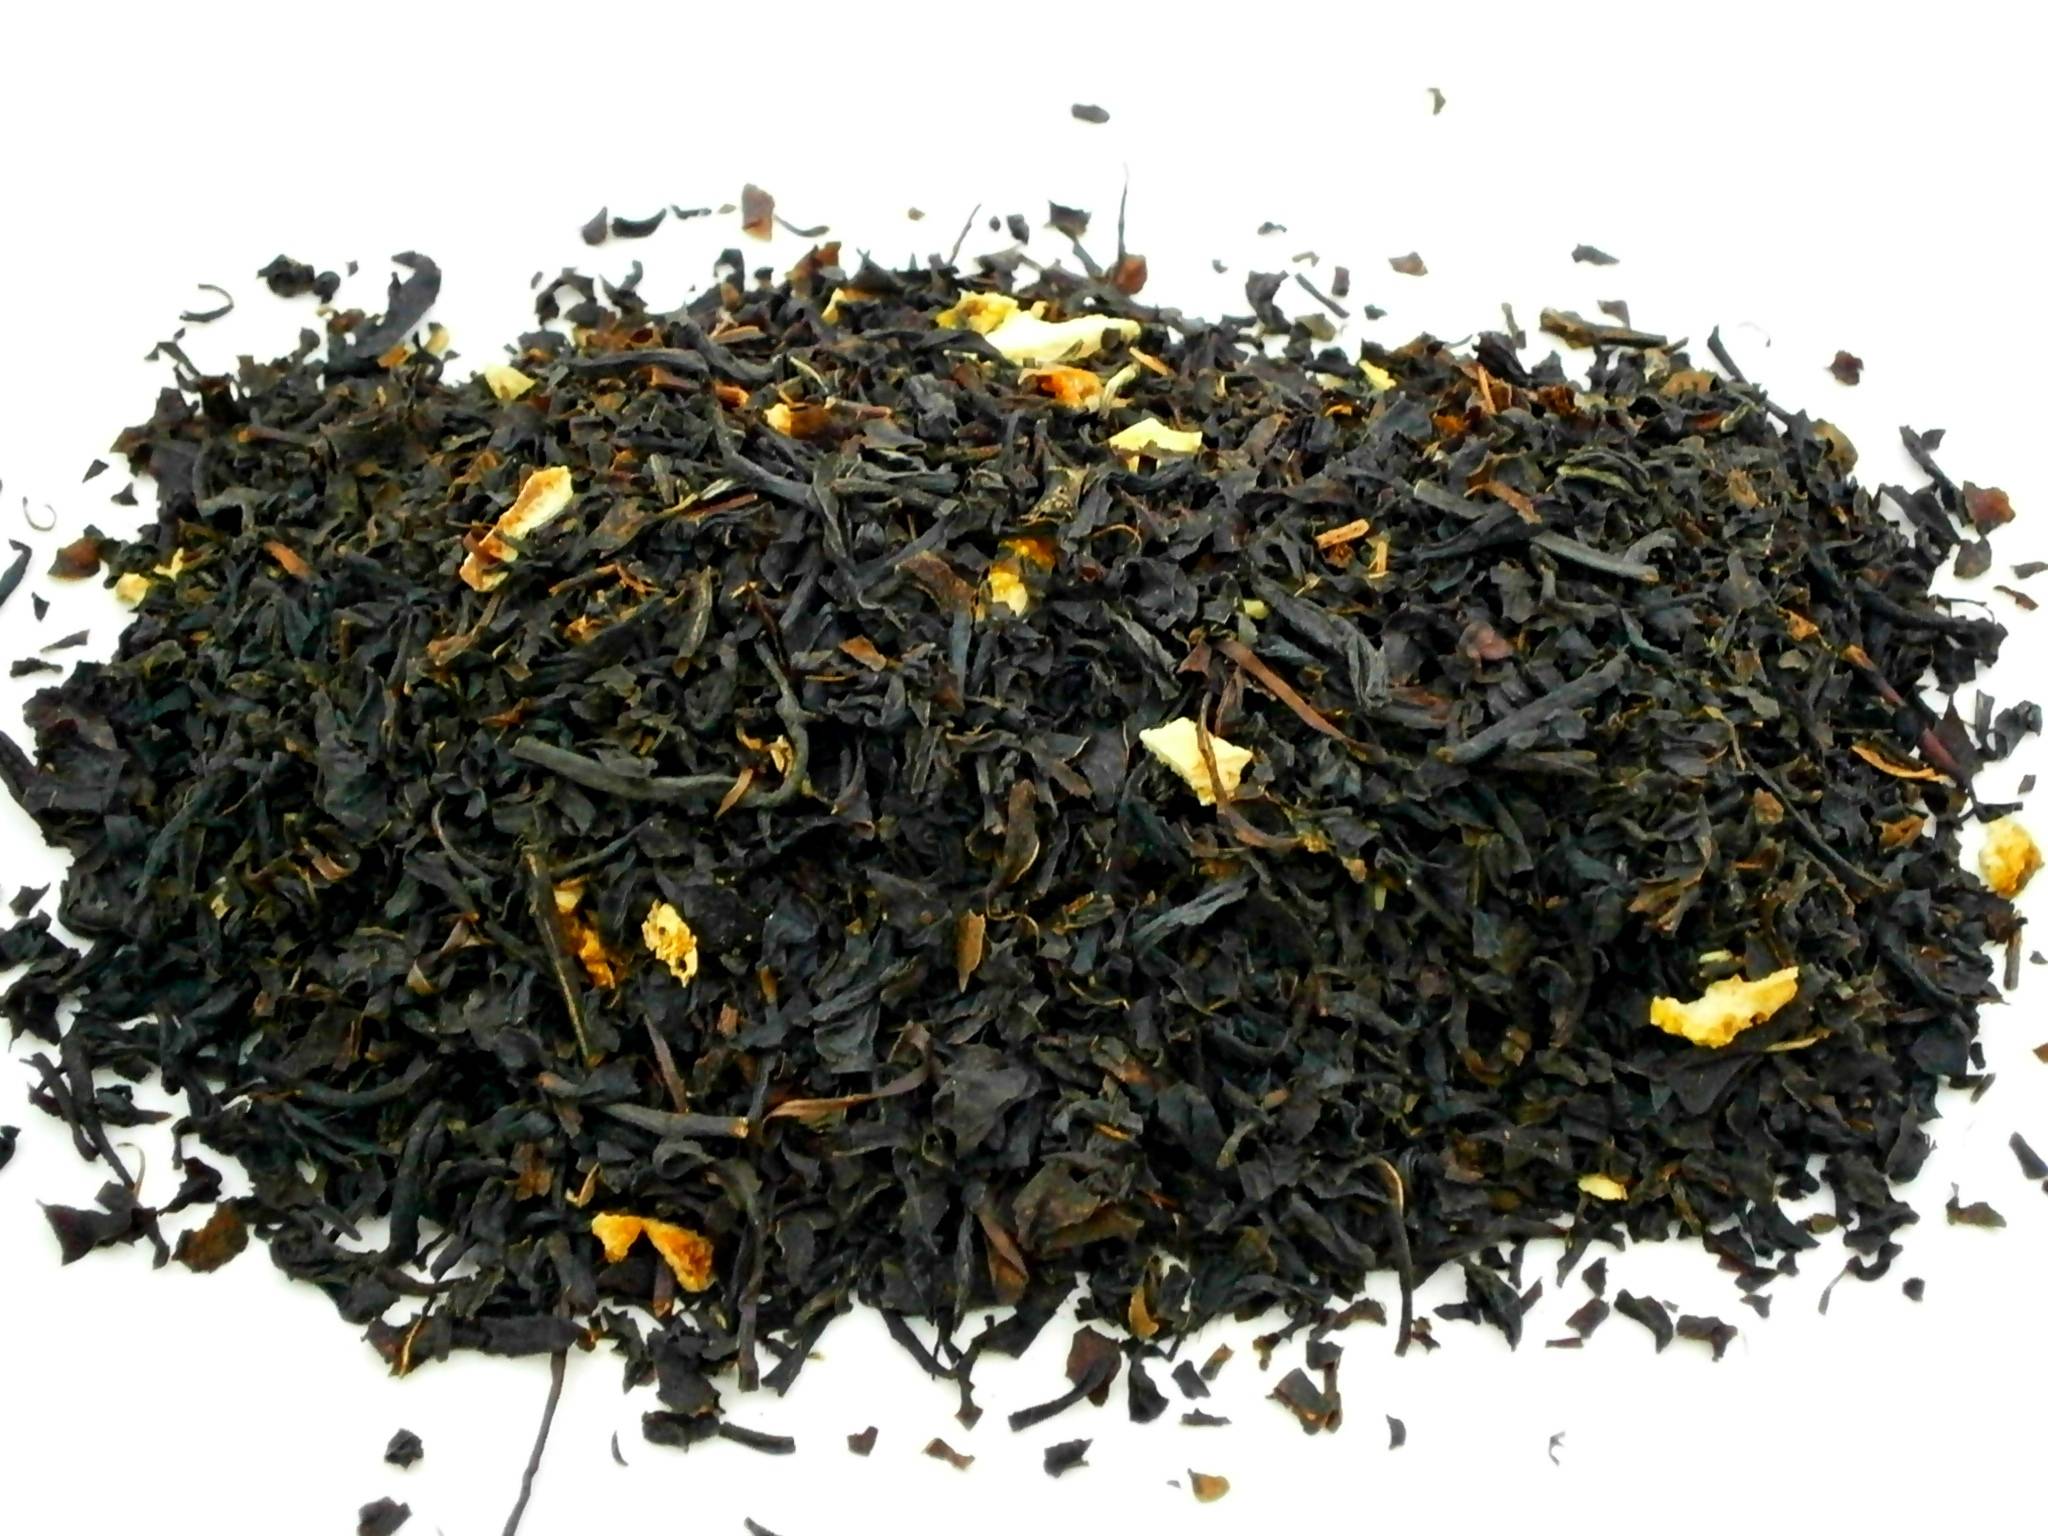 Чай с бергамотом и его полезные свойства